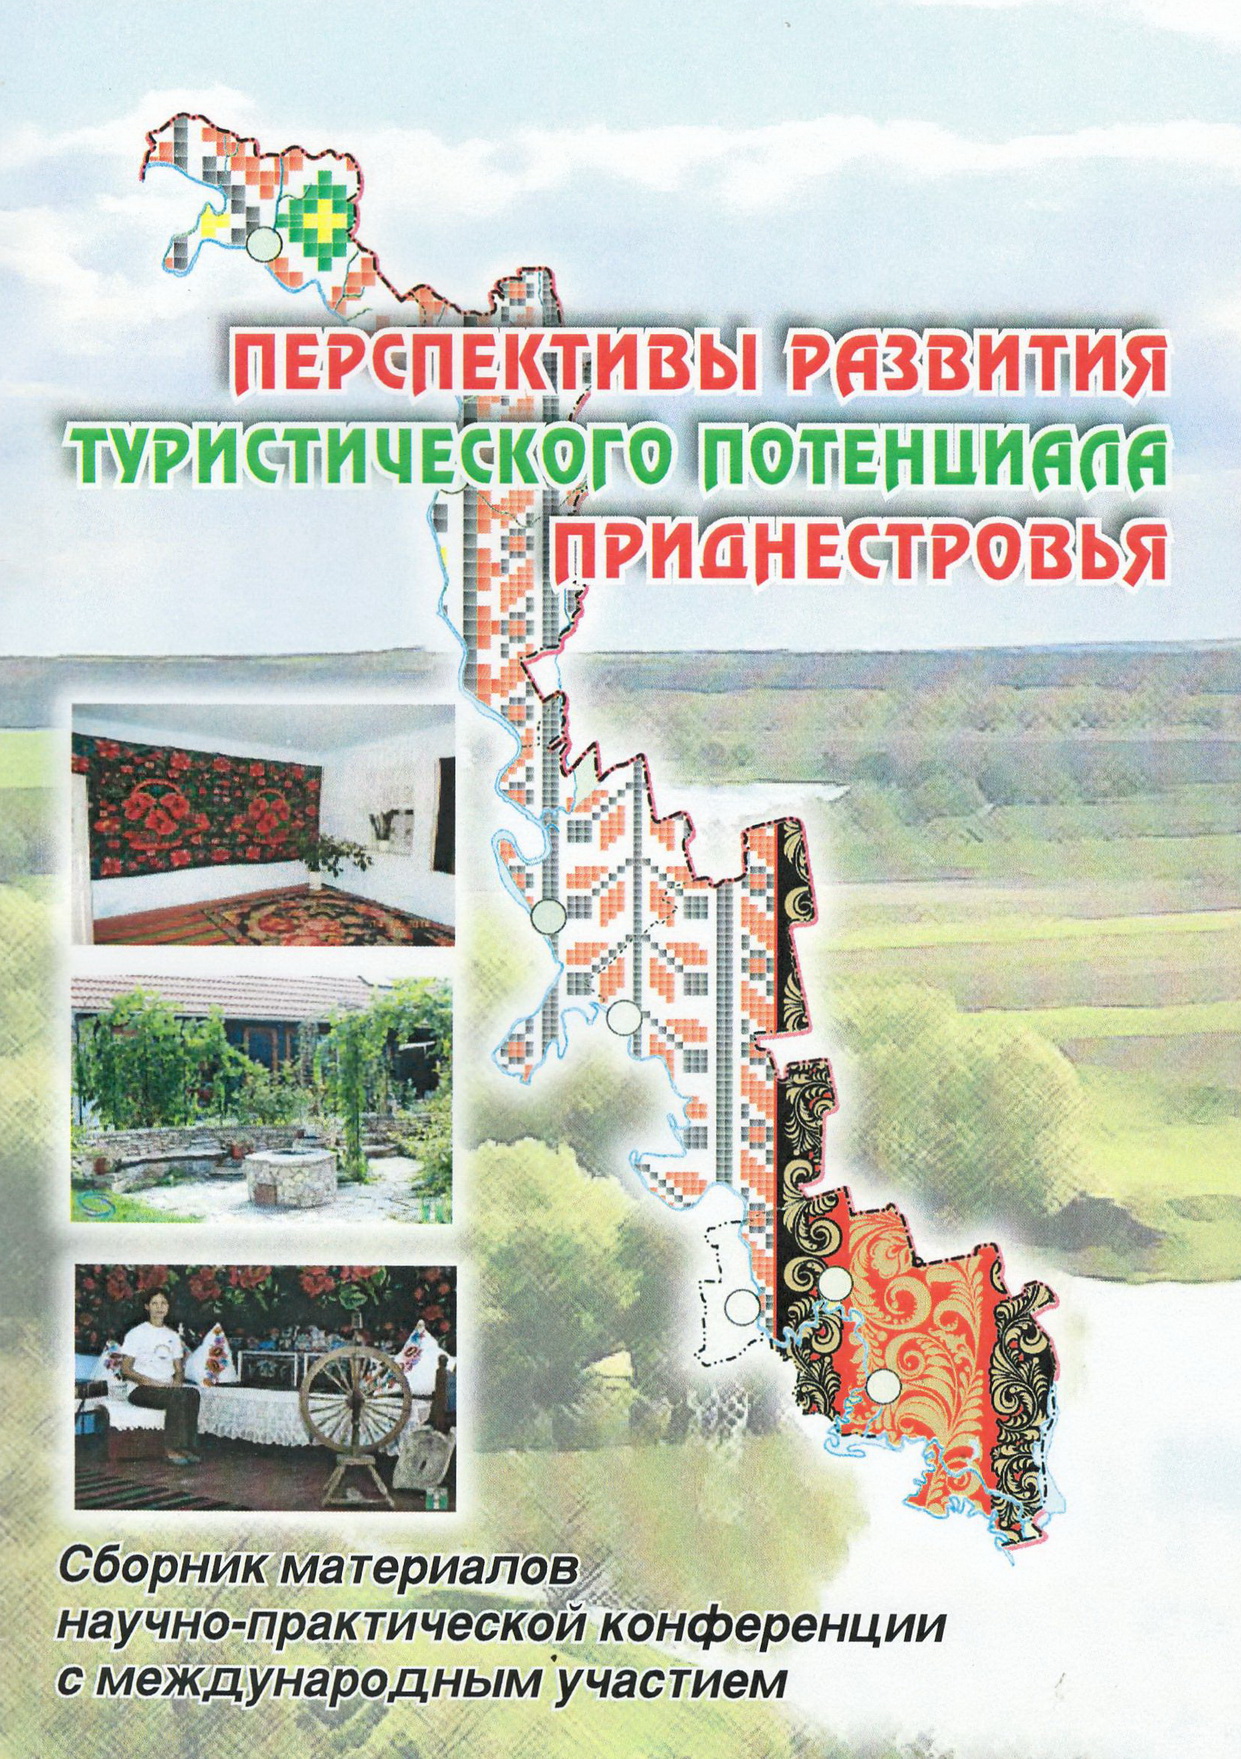 Перспективы развития туристического потенциала Приднестровья 2015